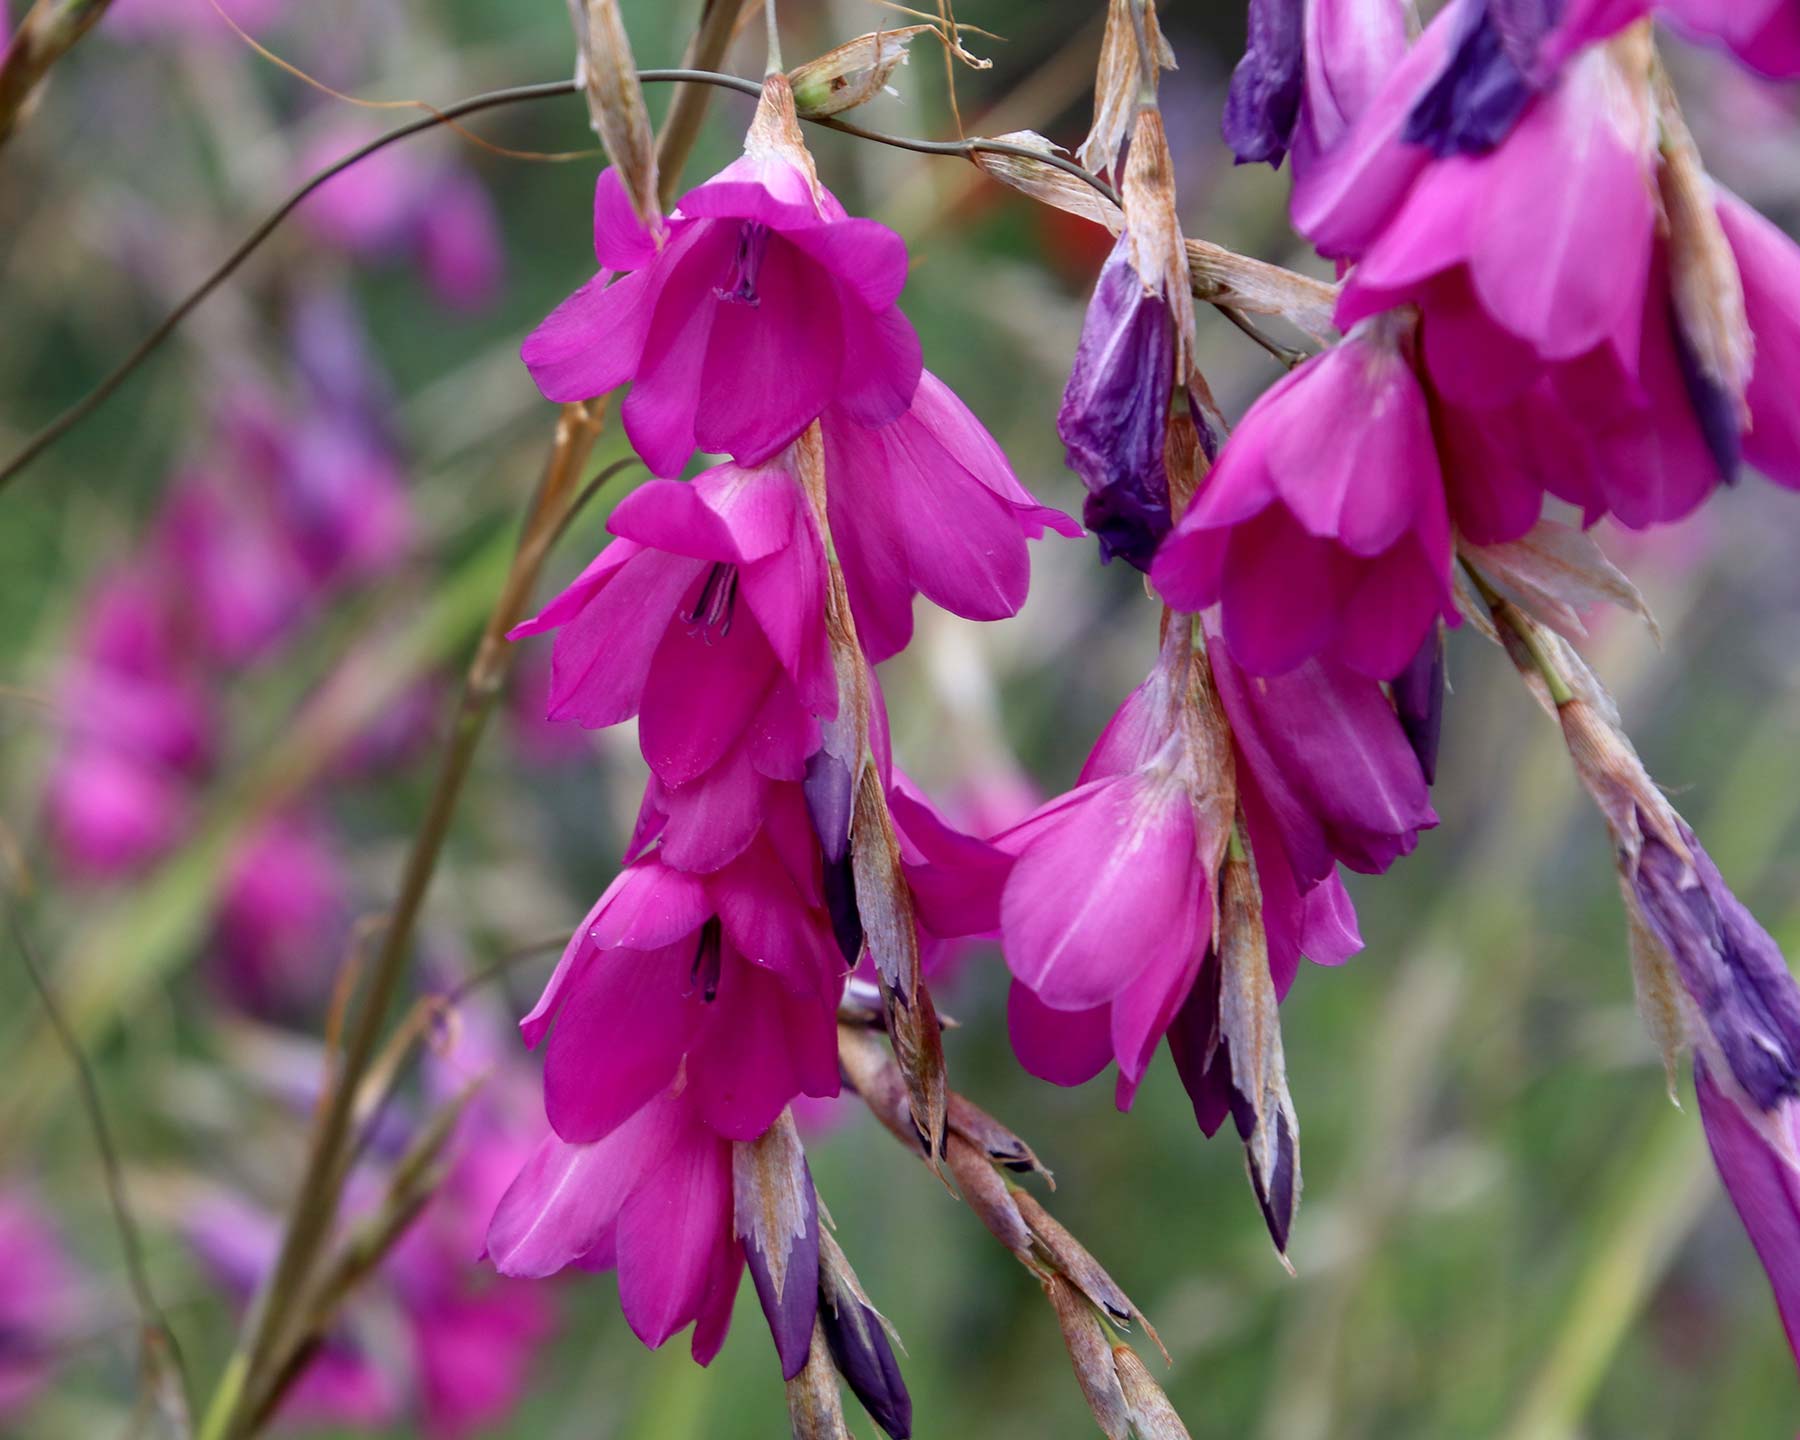 Dierama pulcherrimum - drooping spikes of bright pink bell like flowers